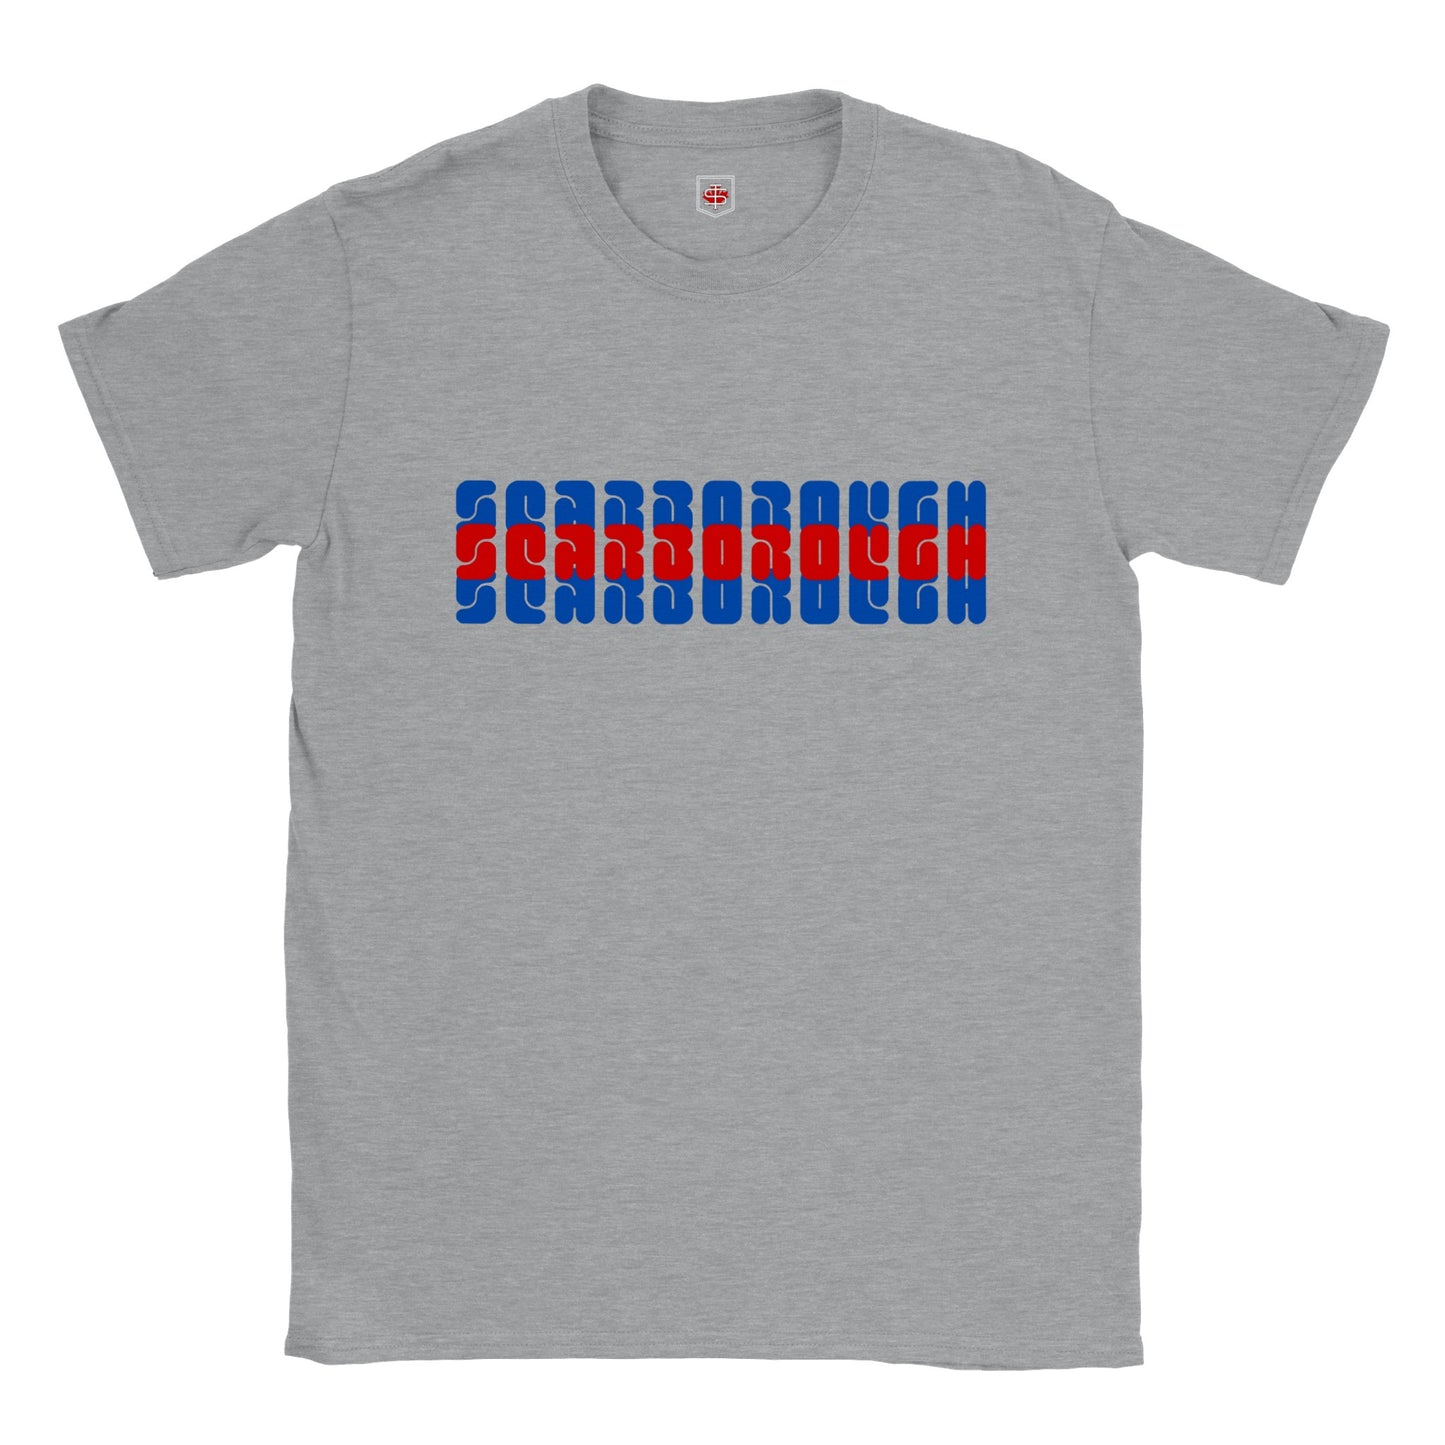 Retro Scarborough - Classic Crewneck T-shirt